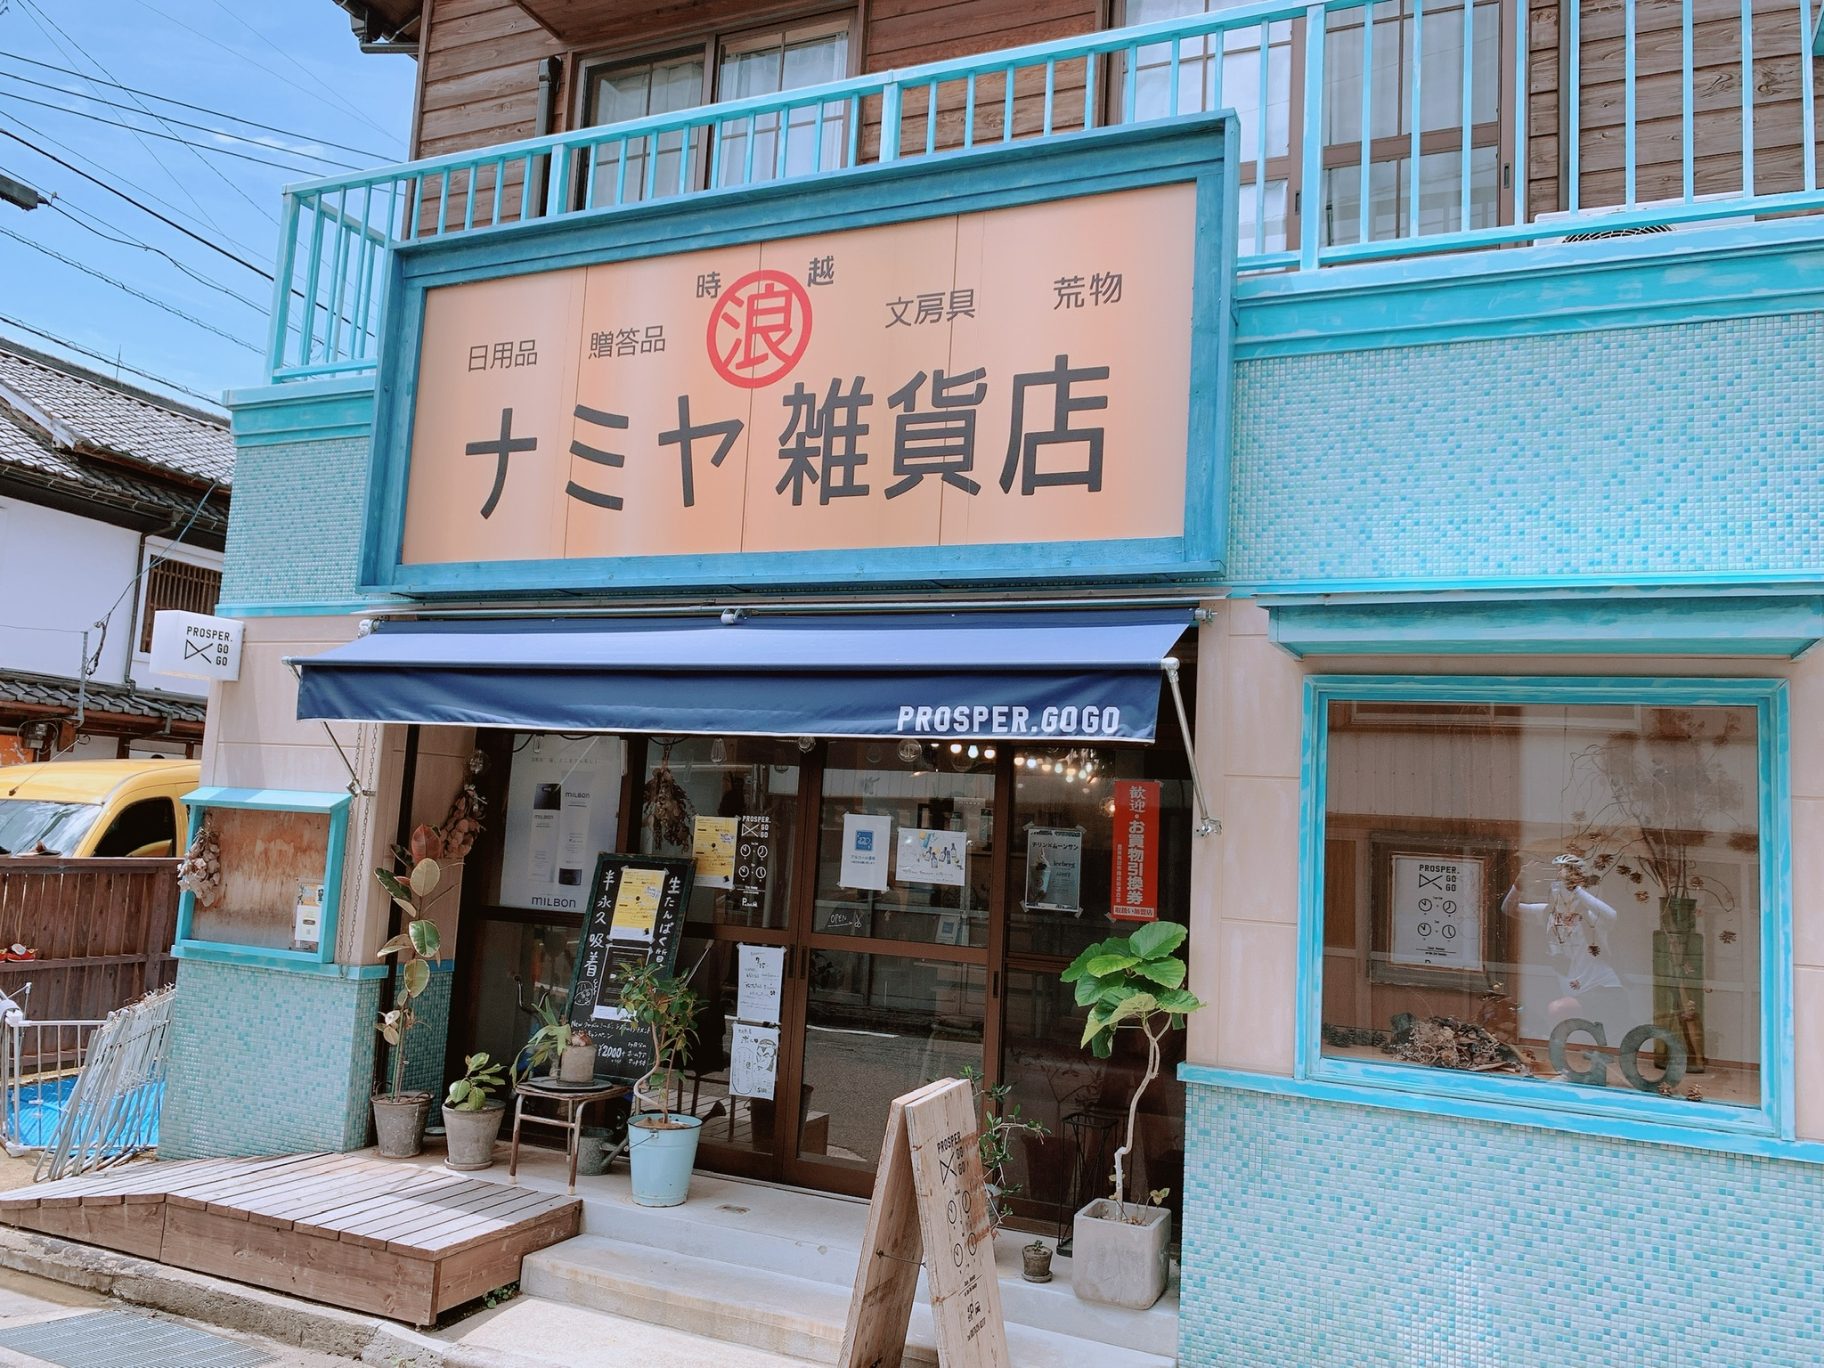 昭和の町,ナミヤ雑貨店